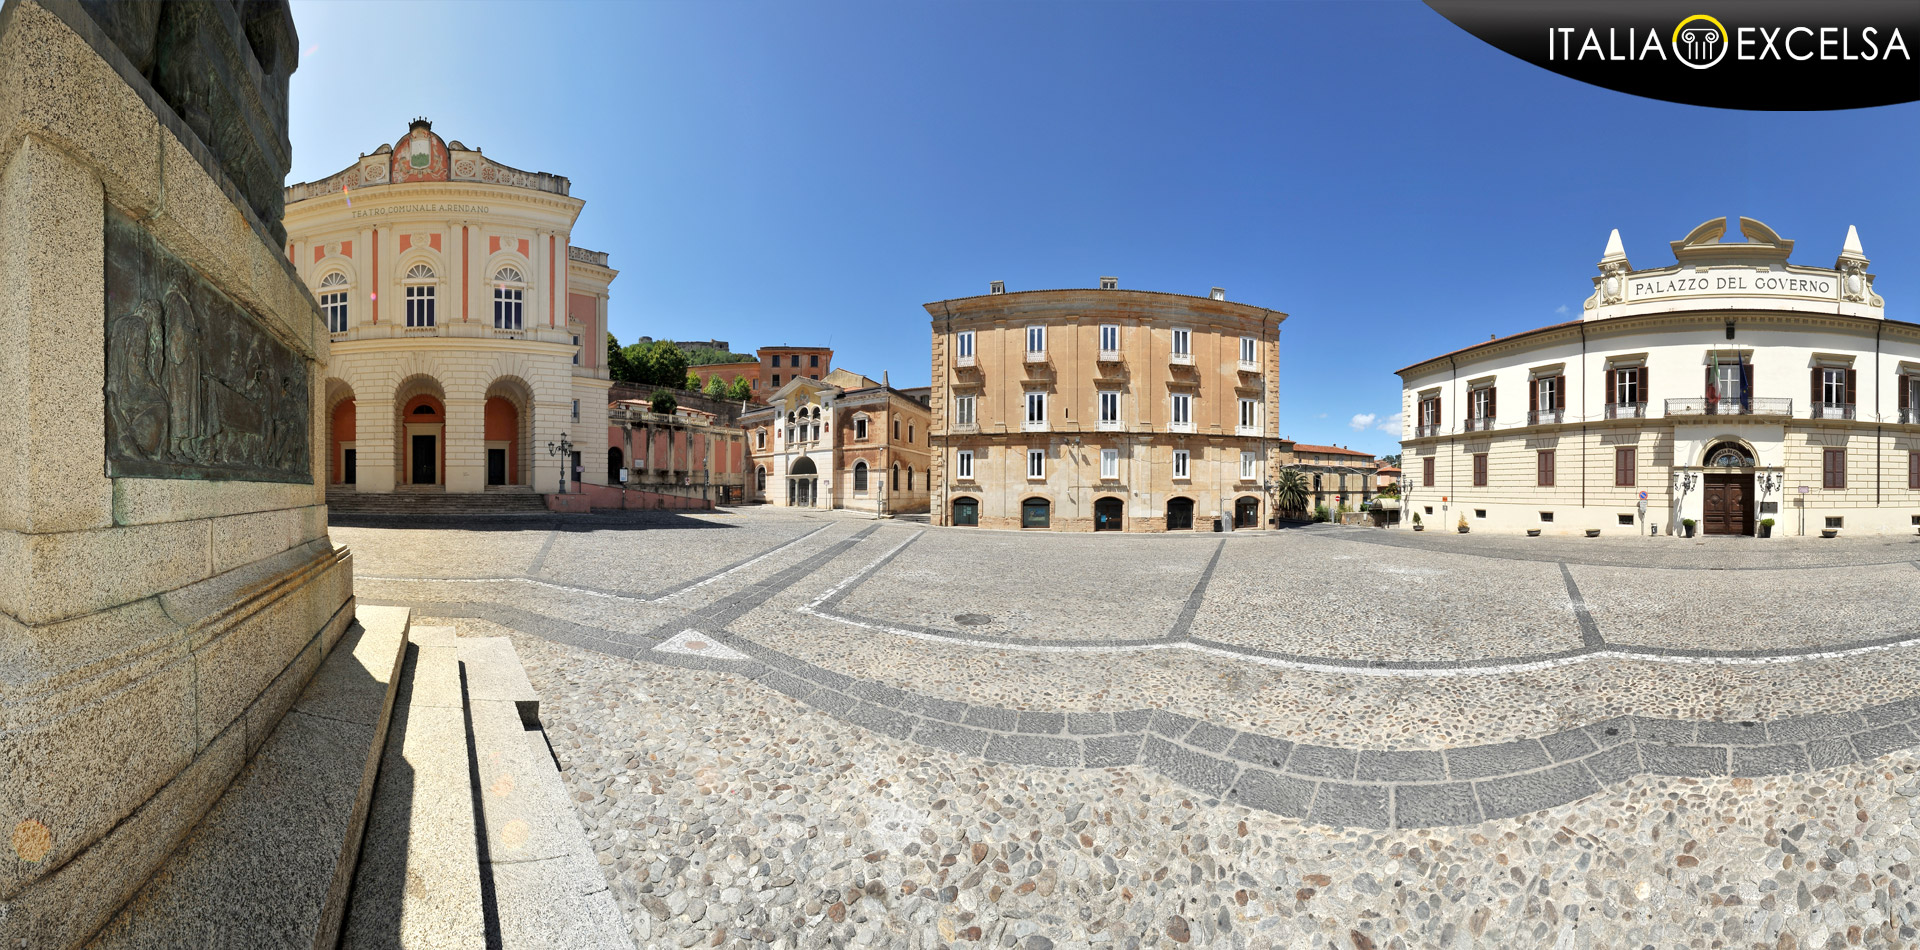 Cosenza - Piazza XV Marzo - Il Teatro A. Rendano di Cosenza e la Biblioteca Civica